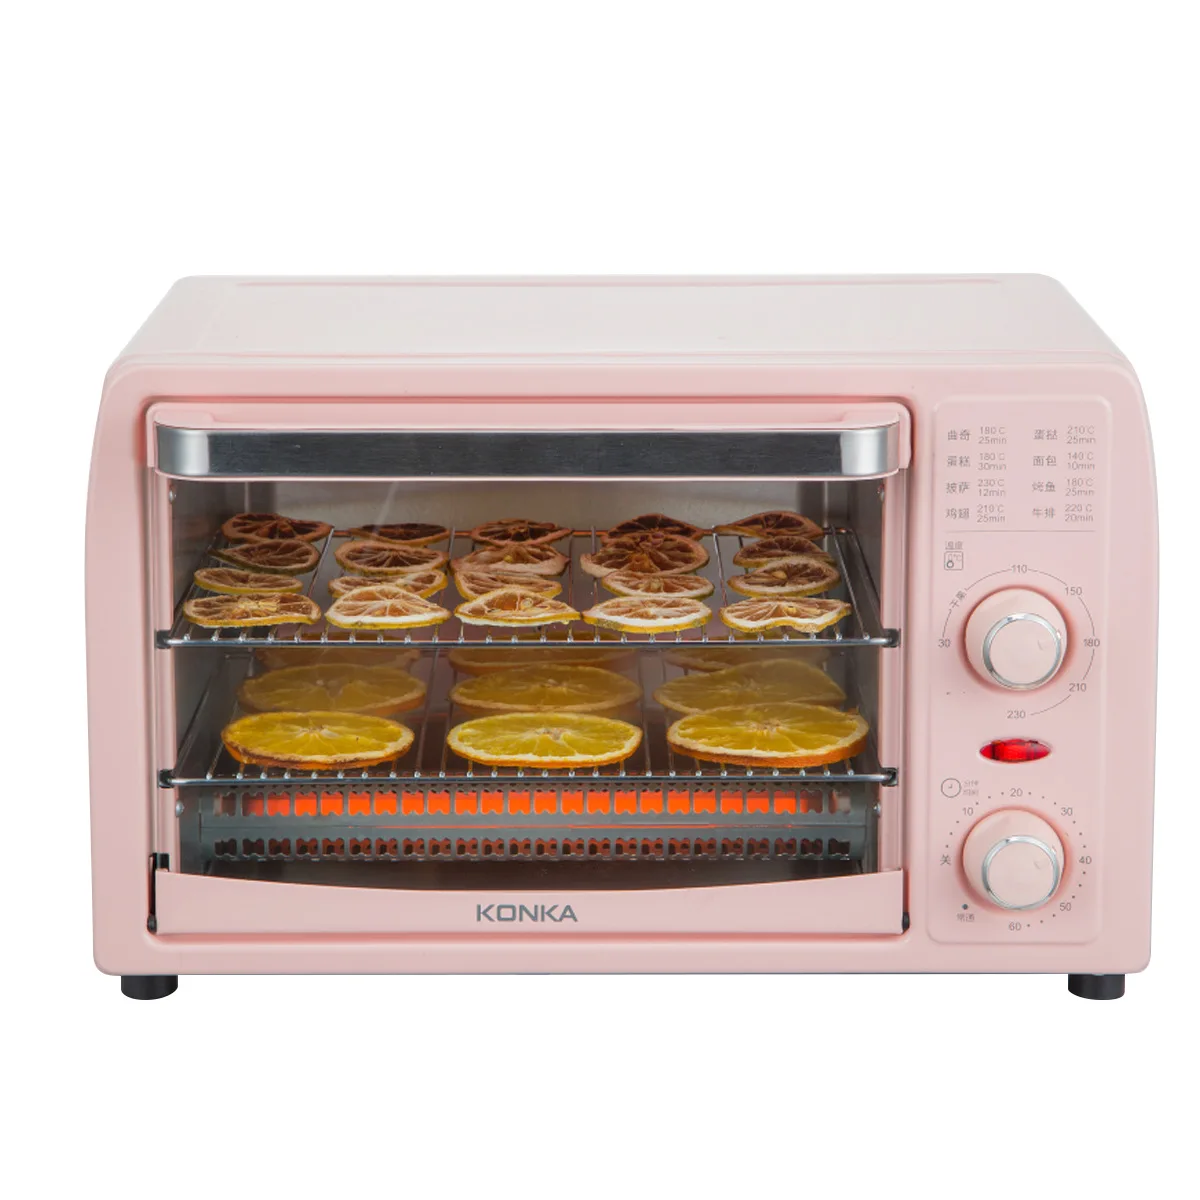 
electric oven 13L Konka mini otg pizza baking oven machine price for household kitchen cake bake 